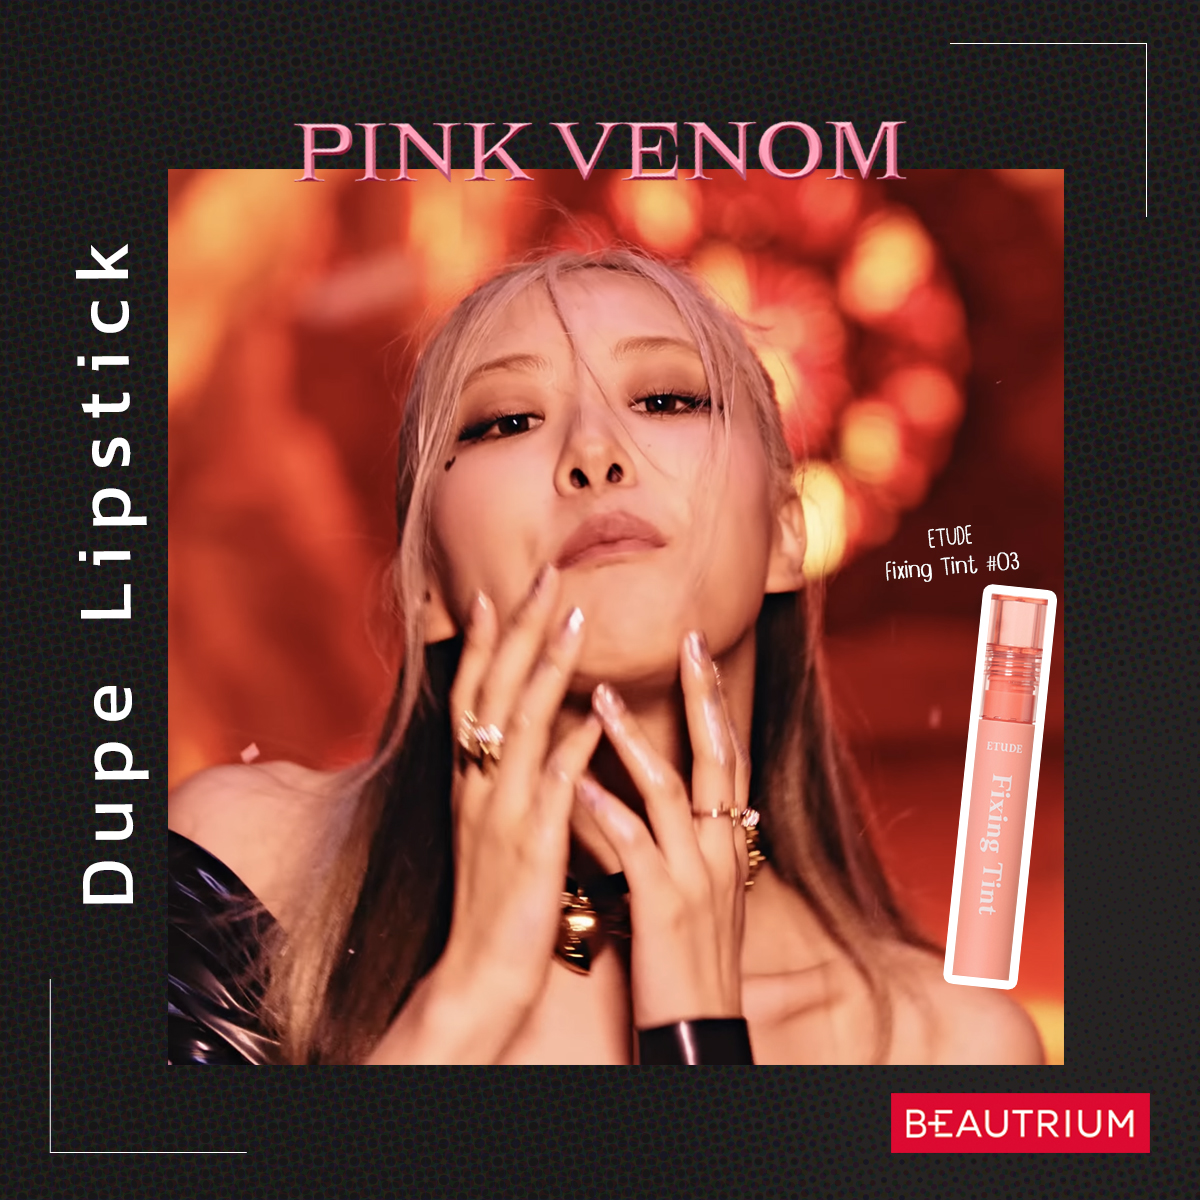 ฉลอง 100 ล้านวิว! แจกพิกัดลิป Dupe ตามสาว ๆ BlackPink ใน MV Pink Venom